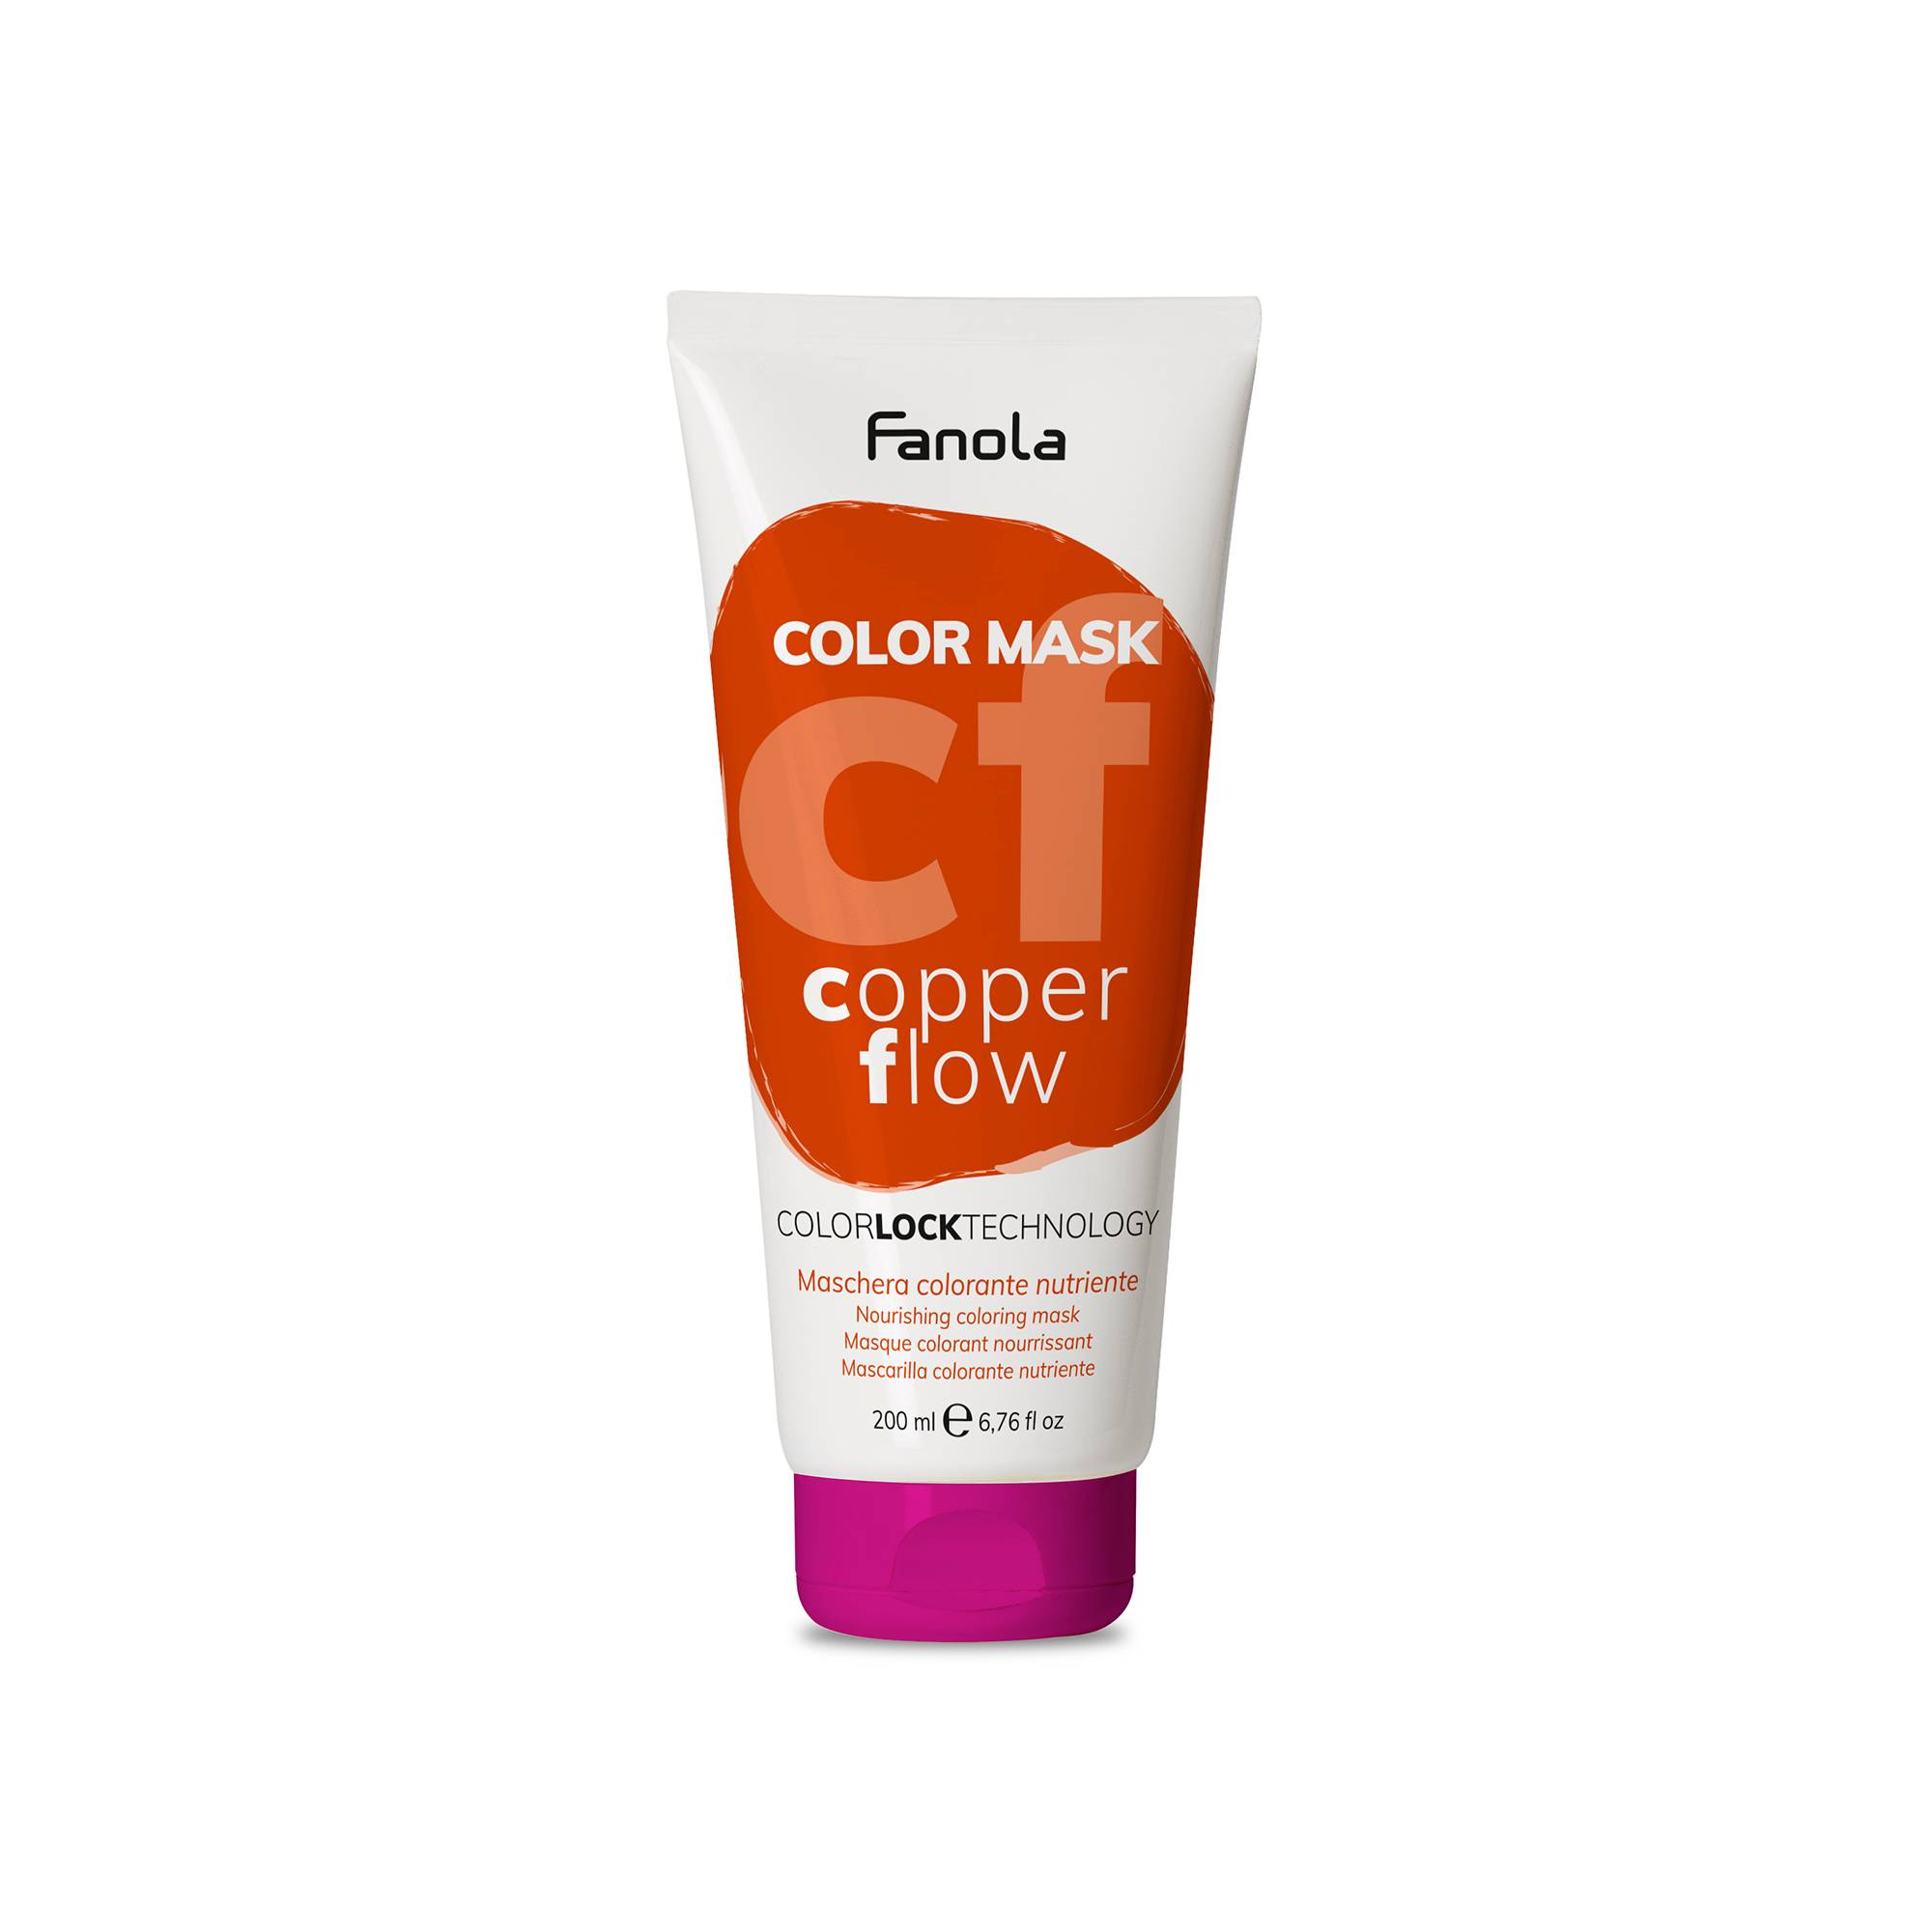 Masque colorant Color Mask copper flow de la marque Fanola Contenance 200ml - 1